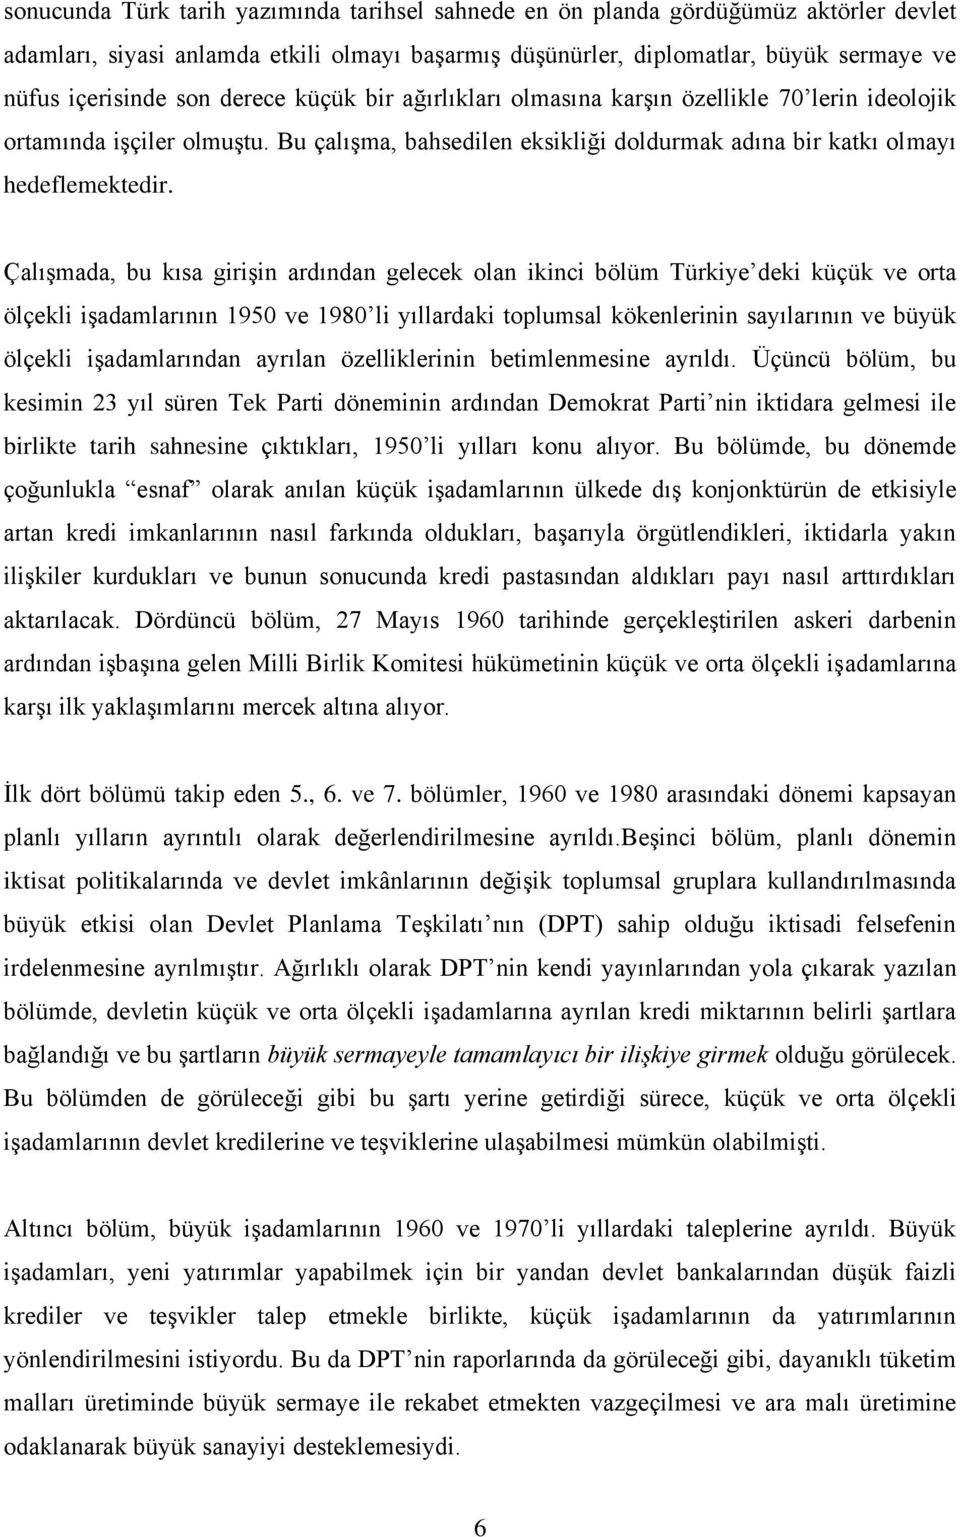 Çalışmada, bu kısa girişin ardından gelecek olan ikinci bölüm Türkiye deki küçük ve orta ölçekli işadamlarının 1950 ve 1980 li yıllardaki toplumsal kökenlerinin sayılarının ve büyük ölçekli